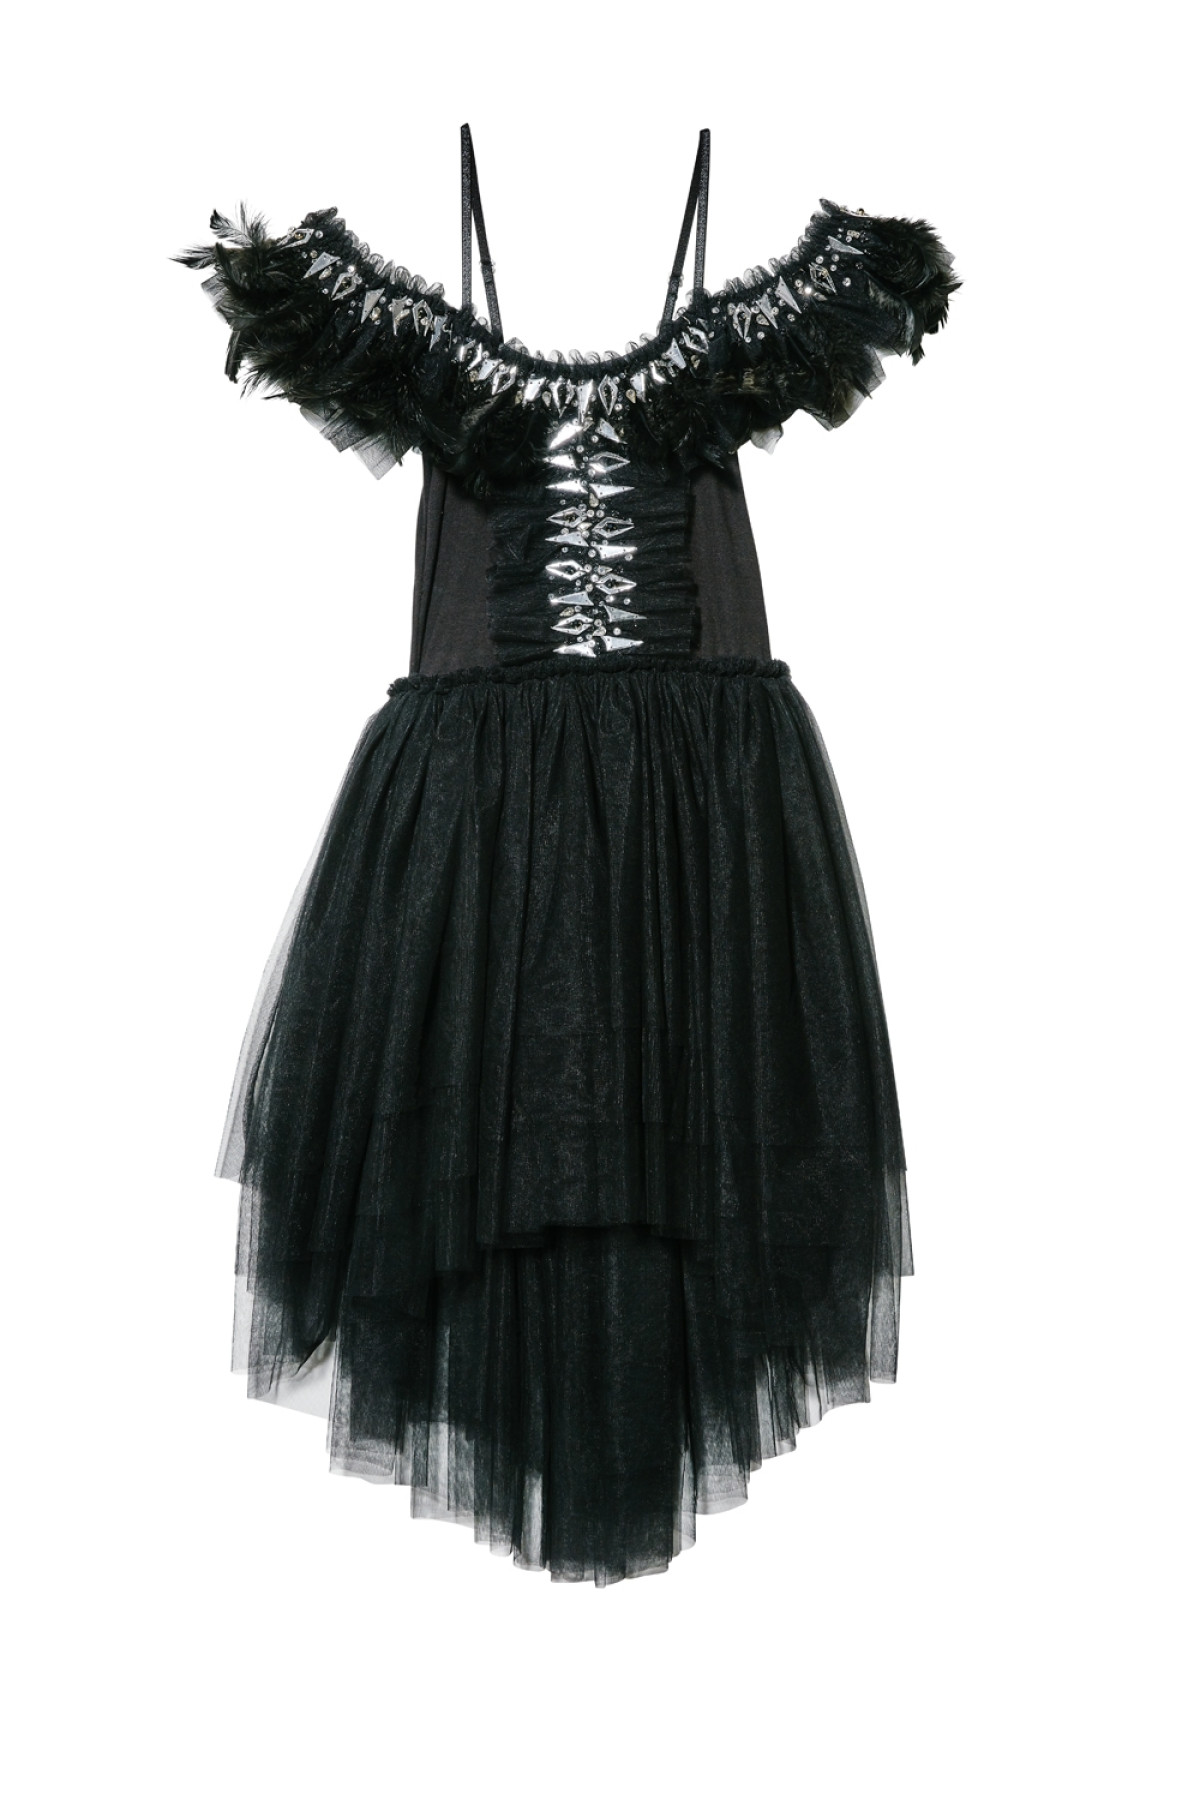 Rent Tutu du Monde Crow Tutu Dress in Black